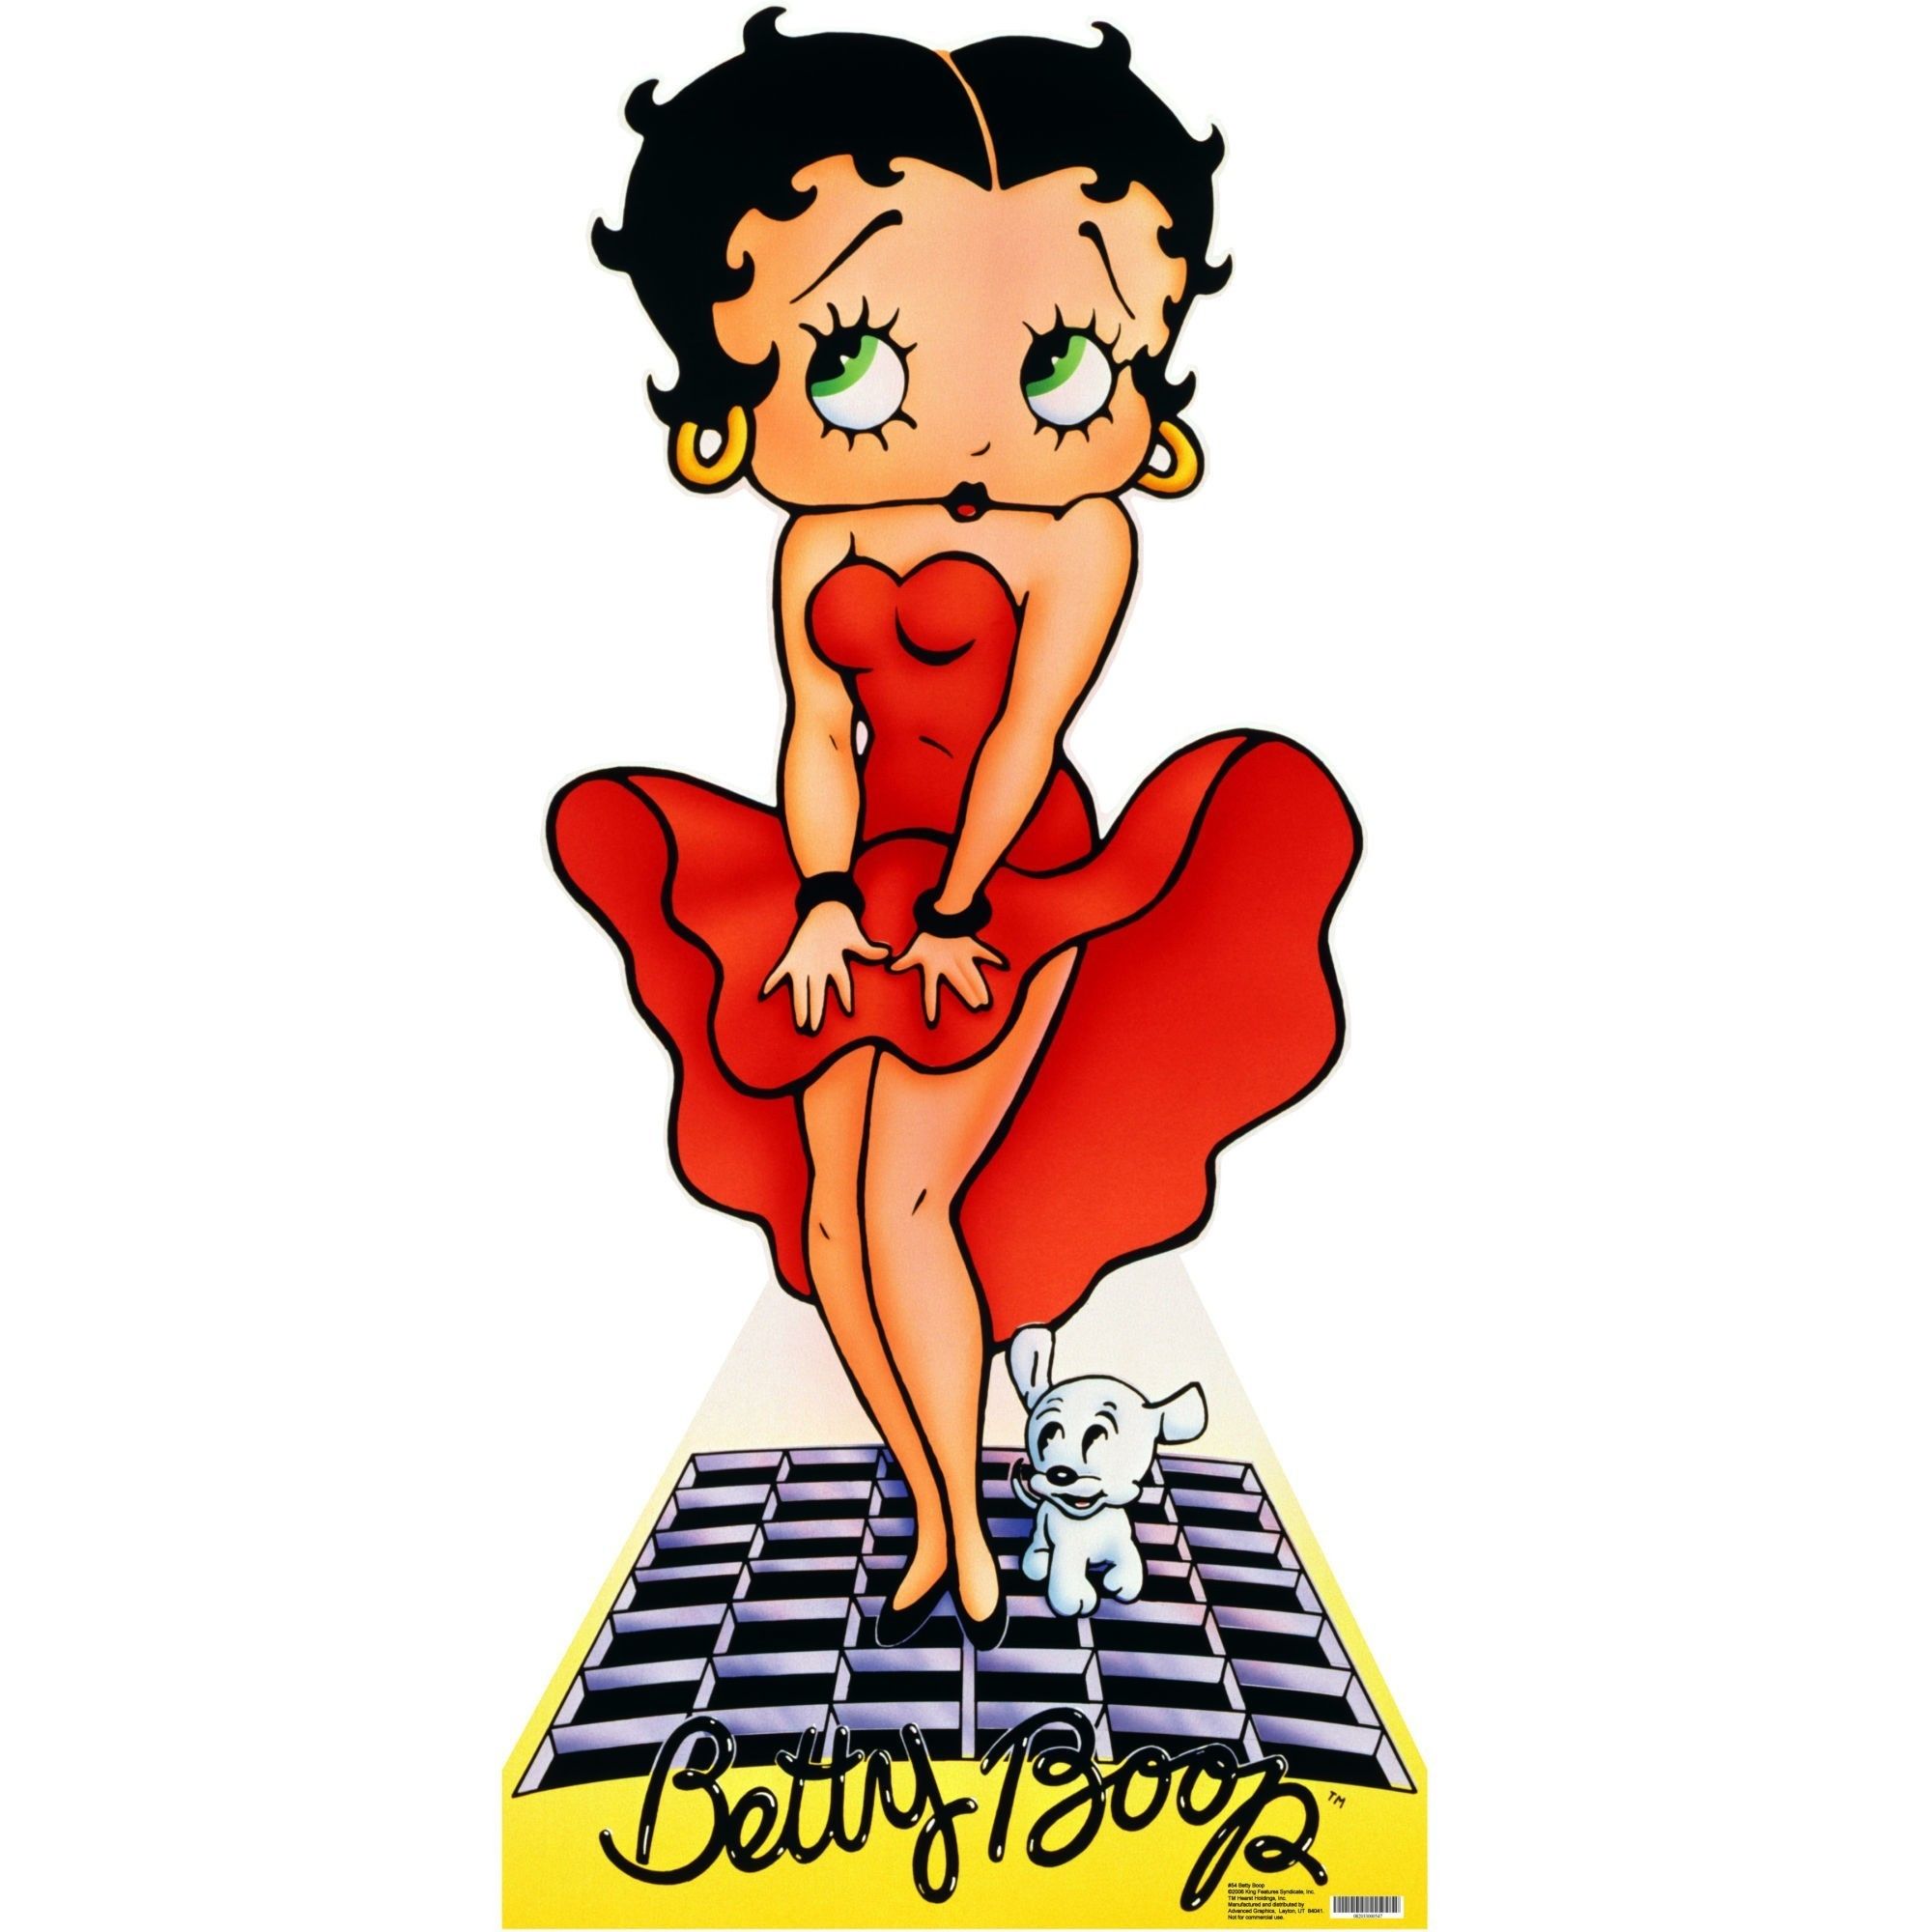 Betty Boop Wallpapers (más de 60 imágenes de fondo)